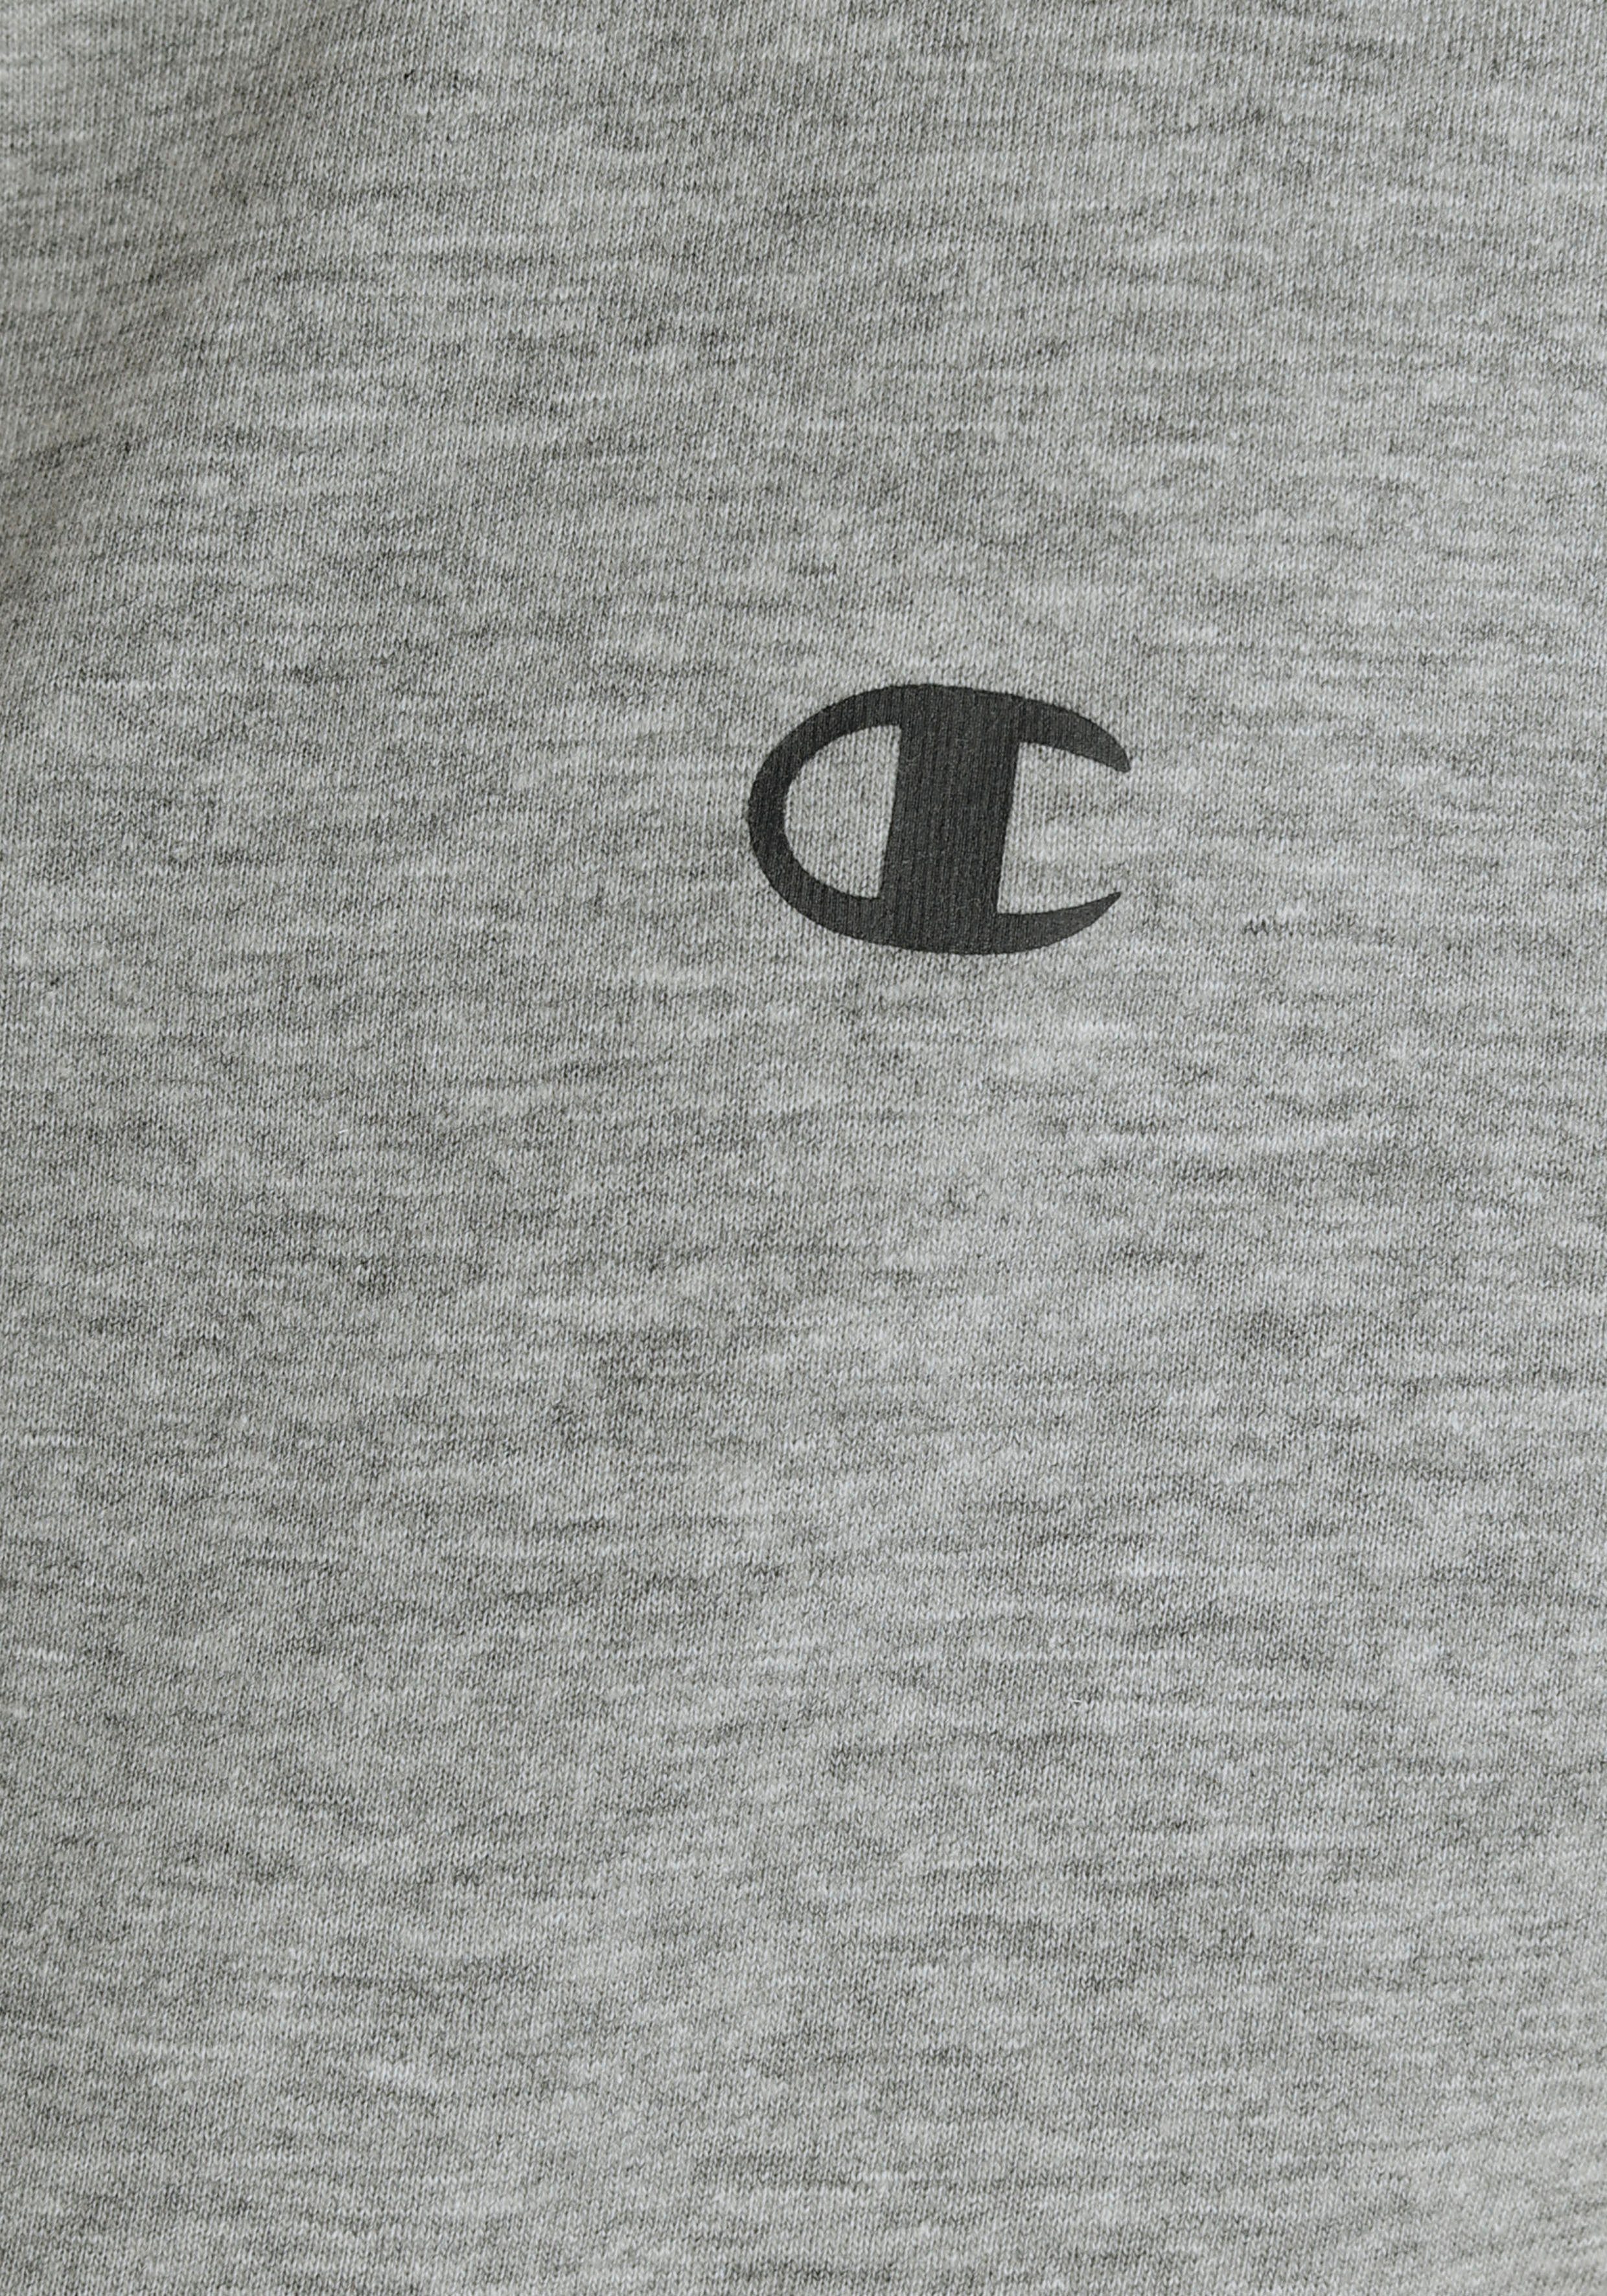 T-Shirt Crew-Neck Basic schwarz-grau 2pack für - 2-tlg) (Packung, Champion Kinder